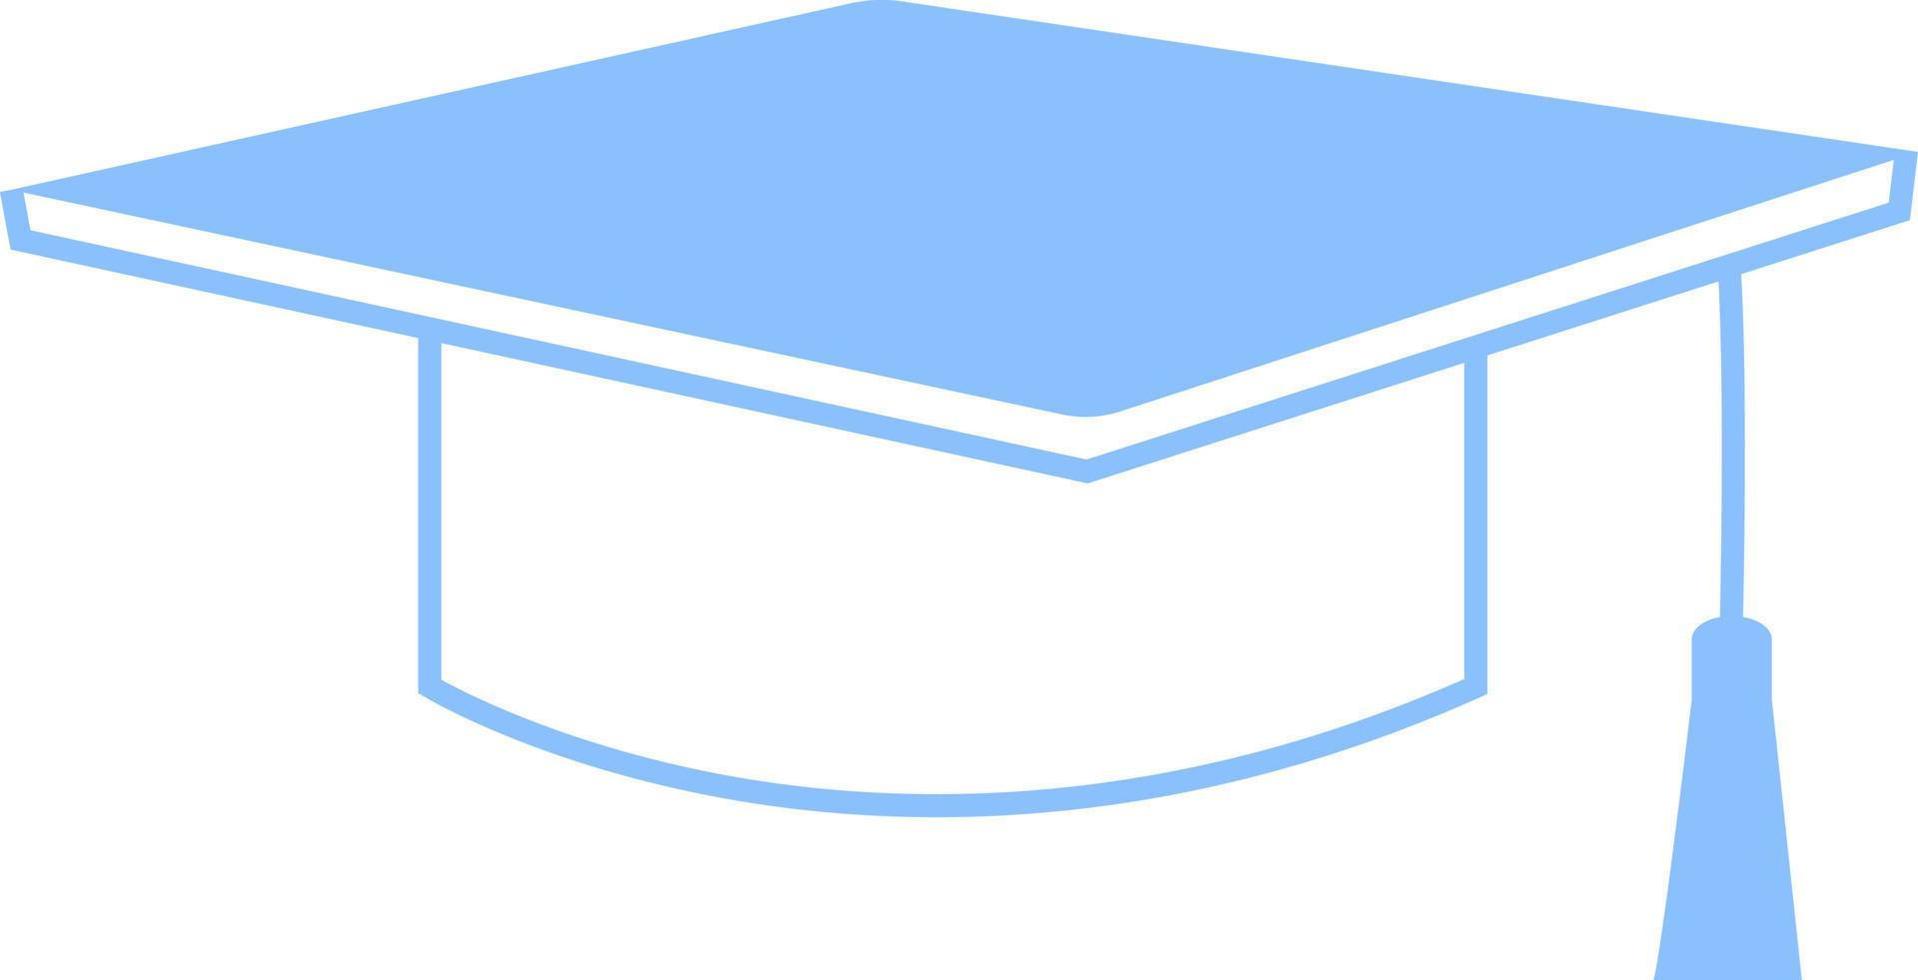 chapeau de graduation blanc, illustration, vecteur sur fond blanc.